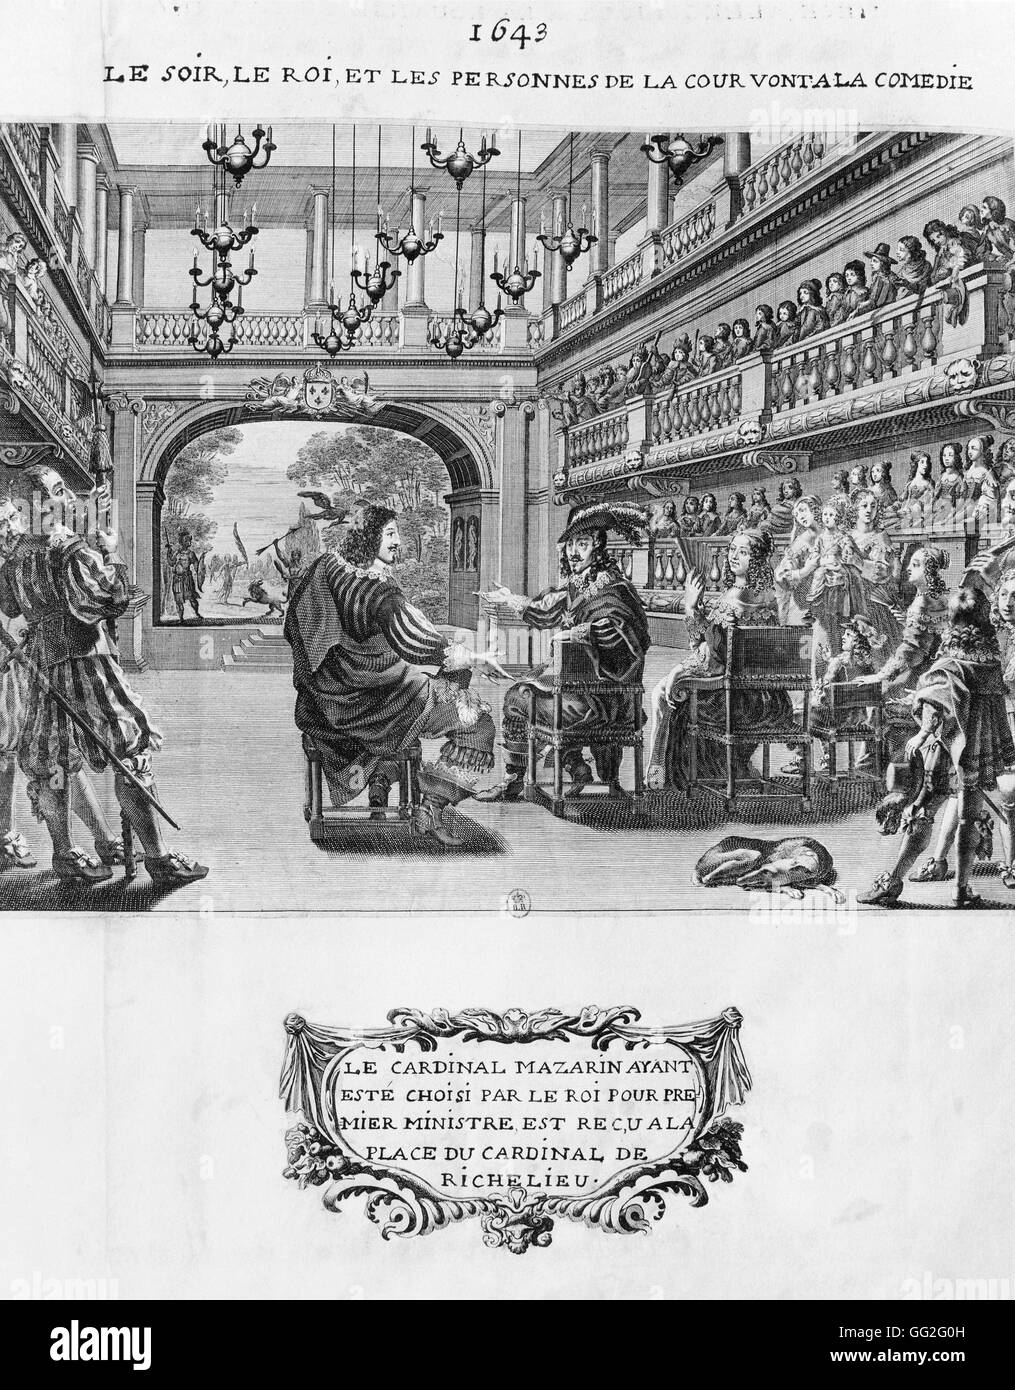 Louis XIII von Frankreich mit seinem Minister Mazarin und den Mitgliedern des Gerichts eine Komödie Gravur 1643 Paris, Bibliothèque Nationale de France anzeigen Stockfoto